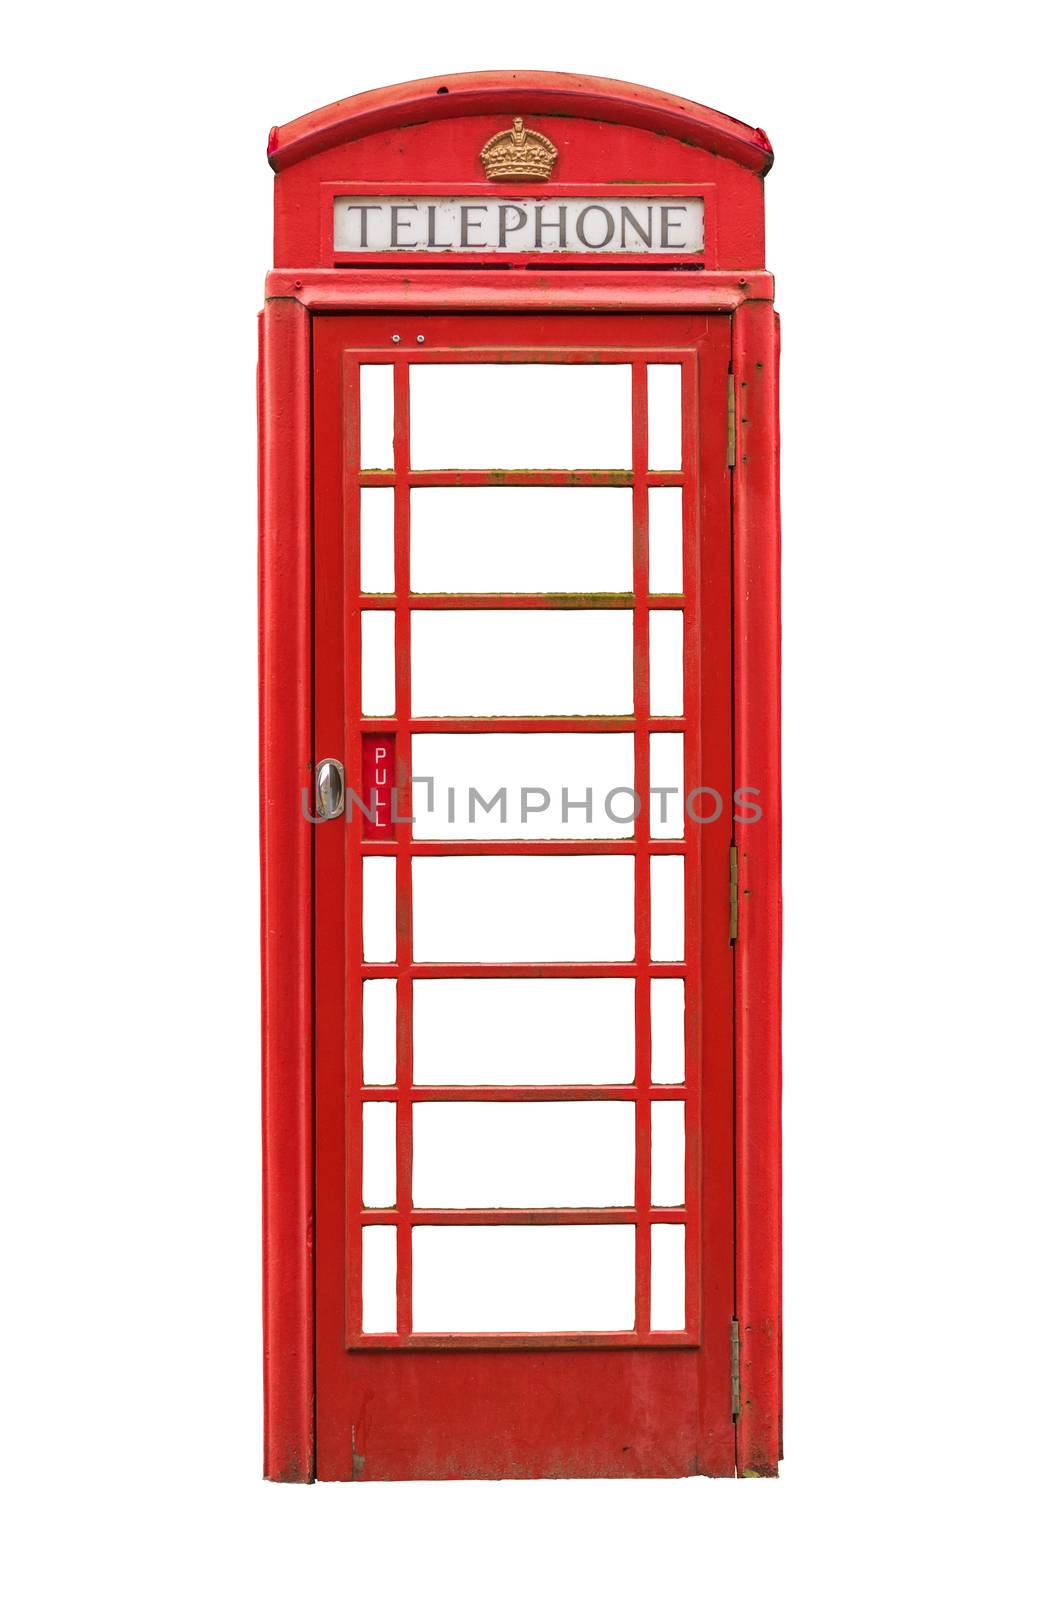 Isolated British Telephone Box by mrdoomits